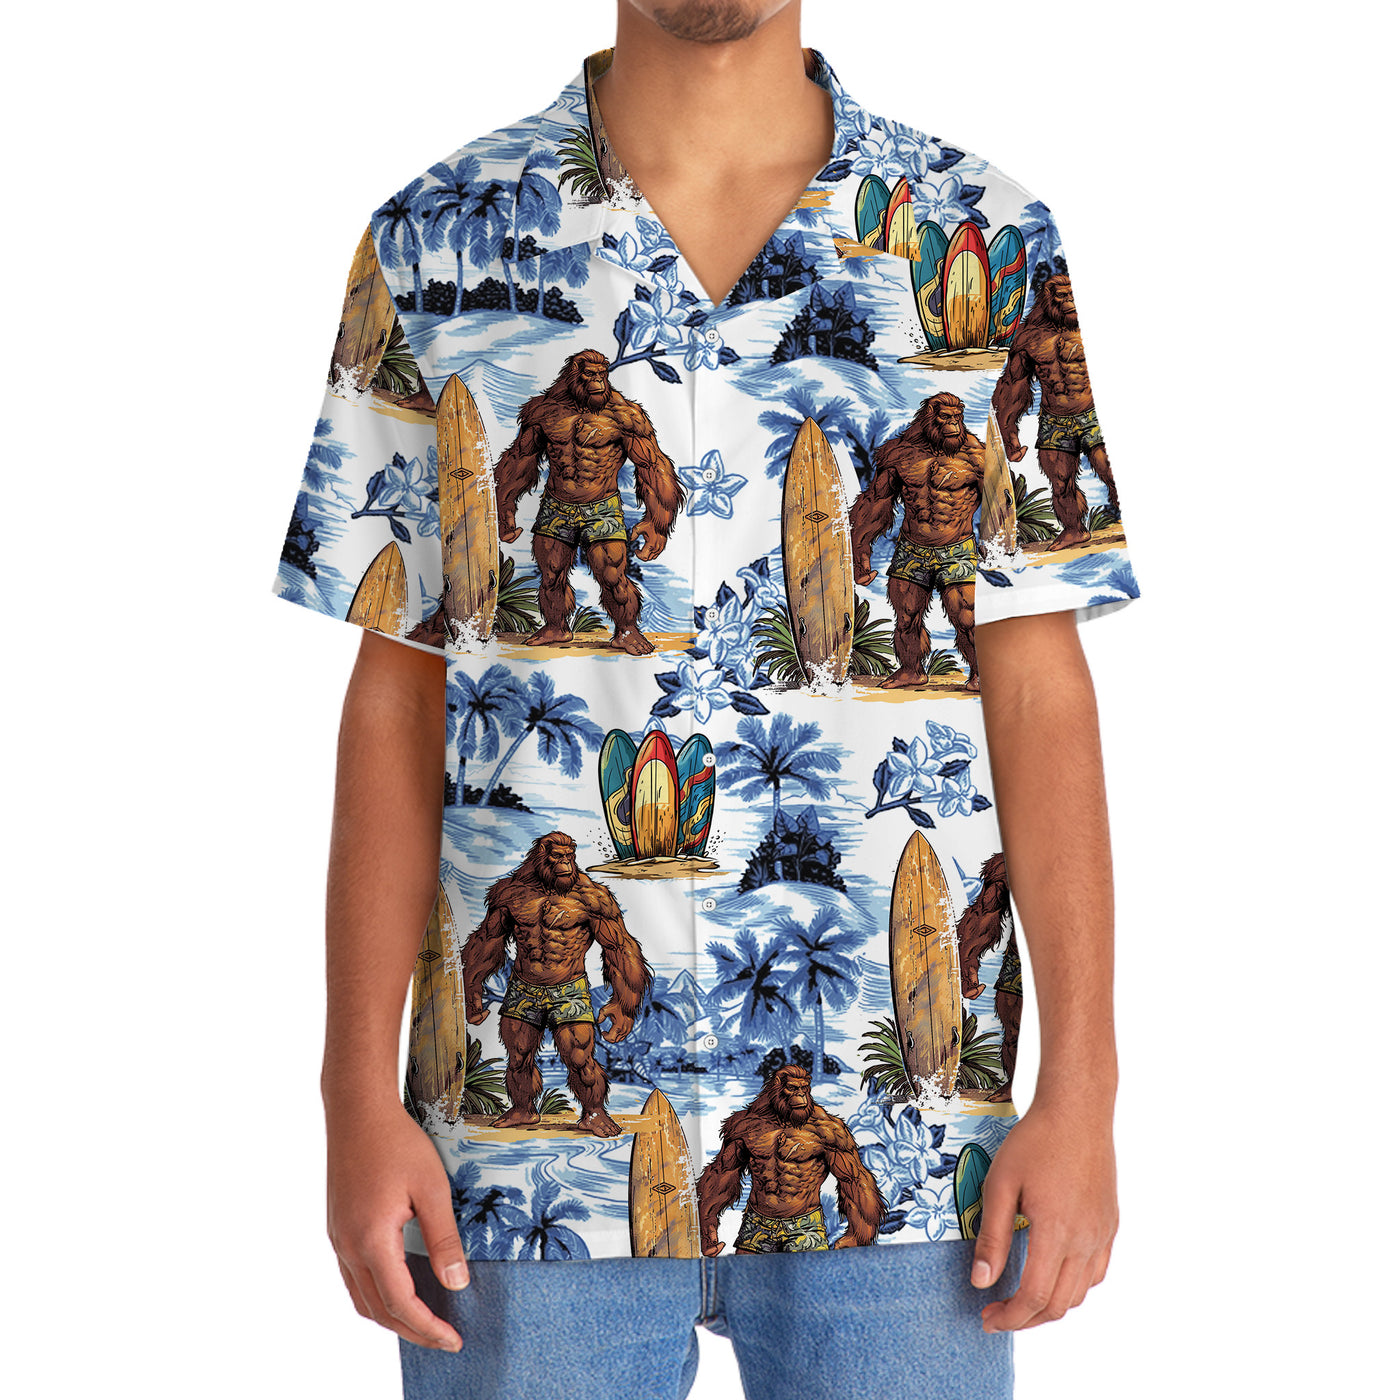 Surfing Bigfoot Surboard Hawaiian Shirt